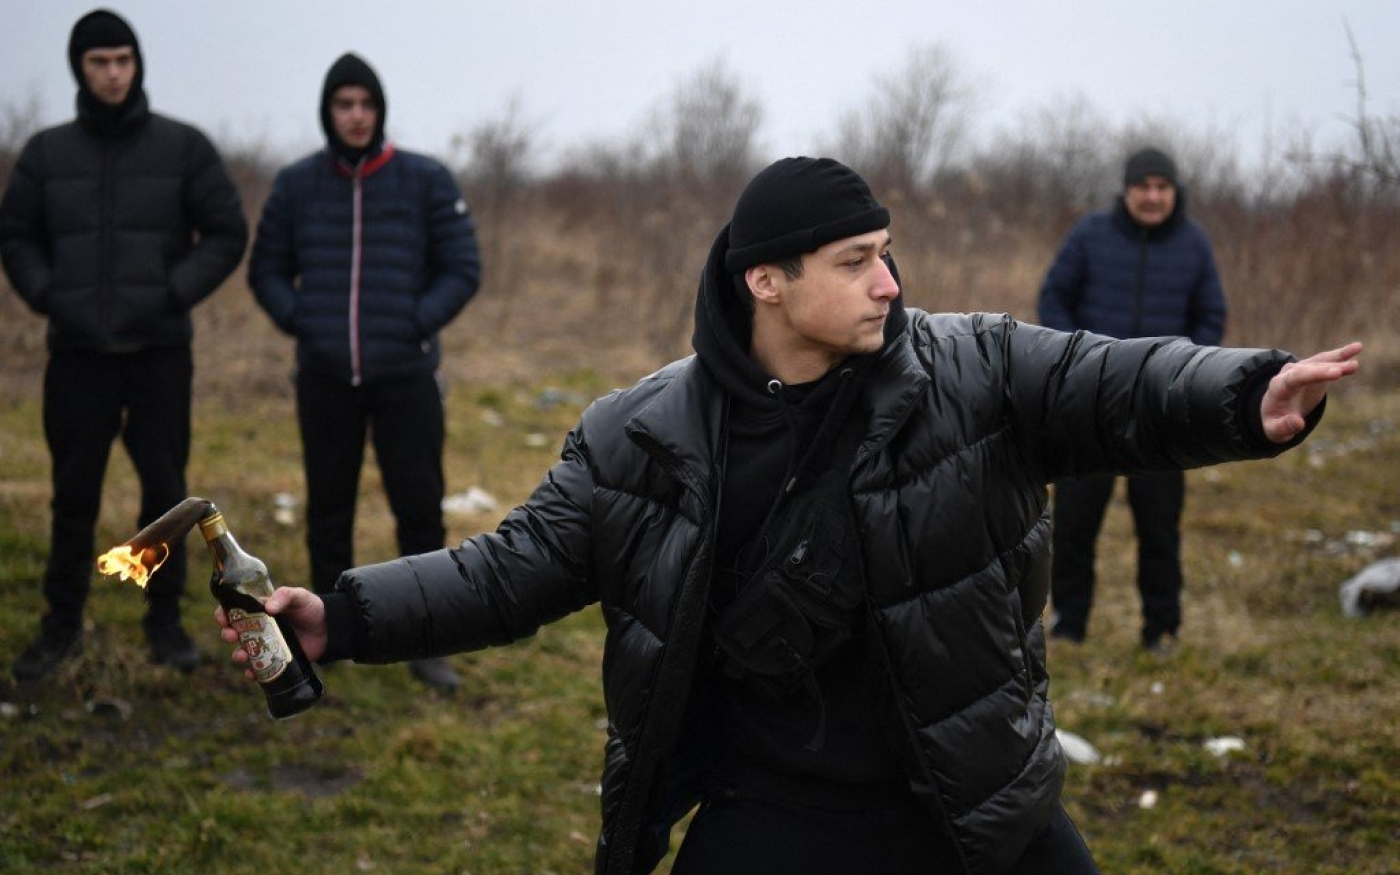 Un jeune homme lance un cocktail Molotov lors d’un cours d’autodéfense dans l’ouest de l’Ukraine, le 4 mars 2022 (AFP)